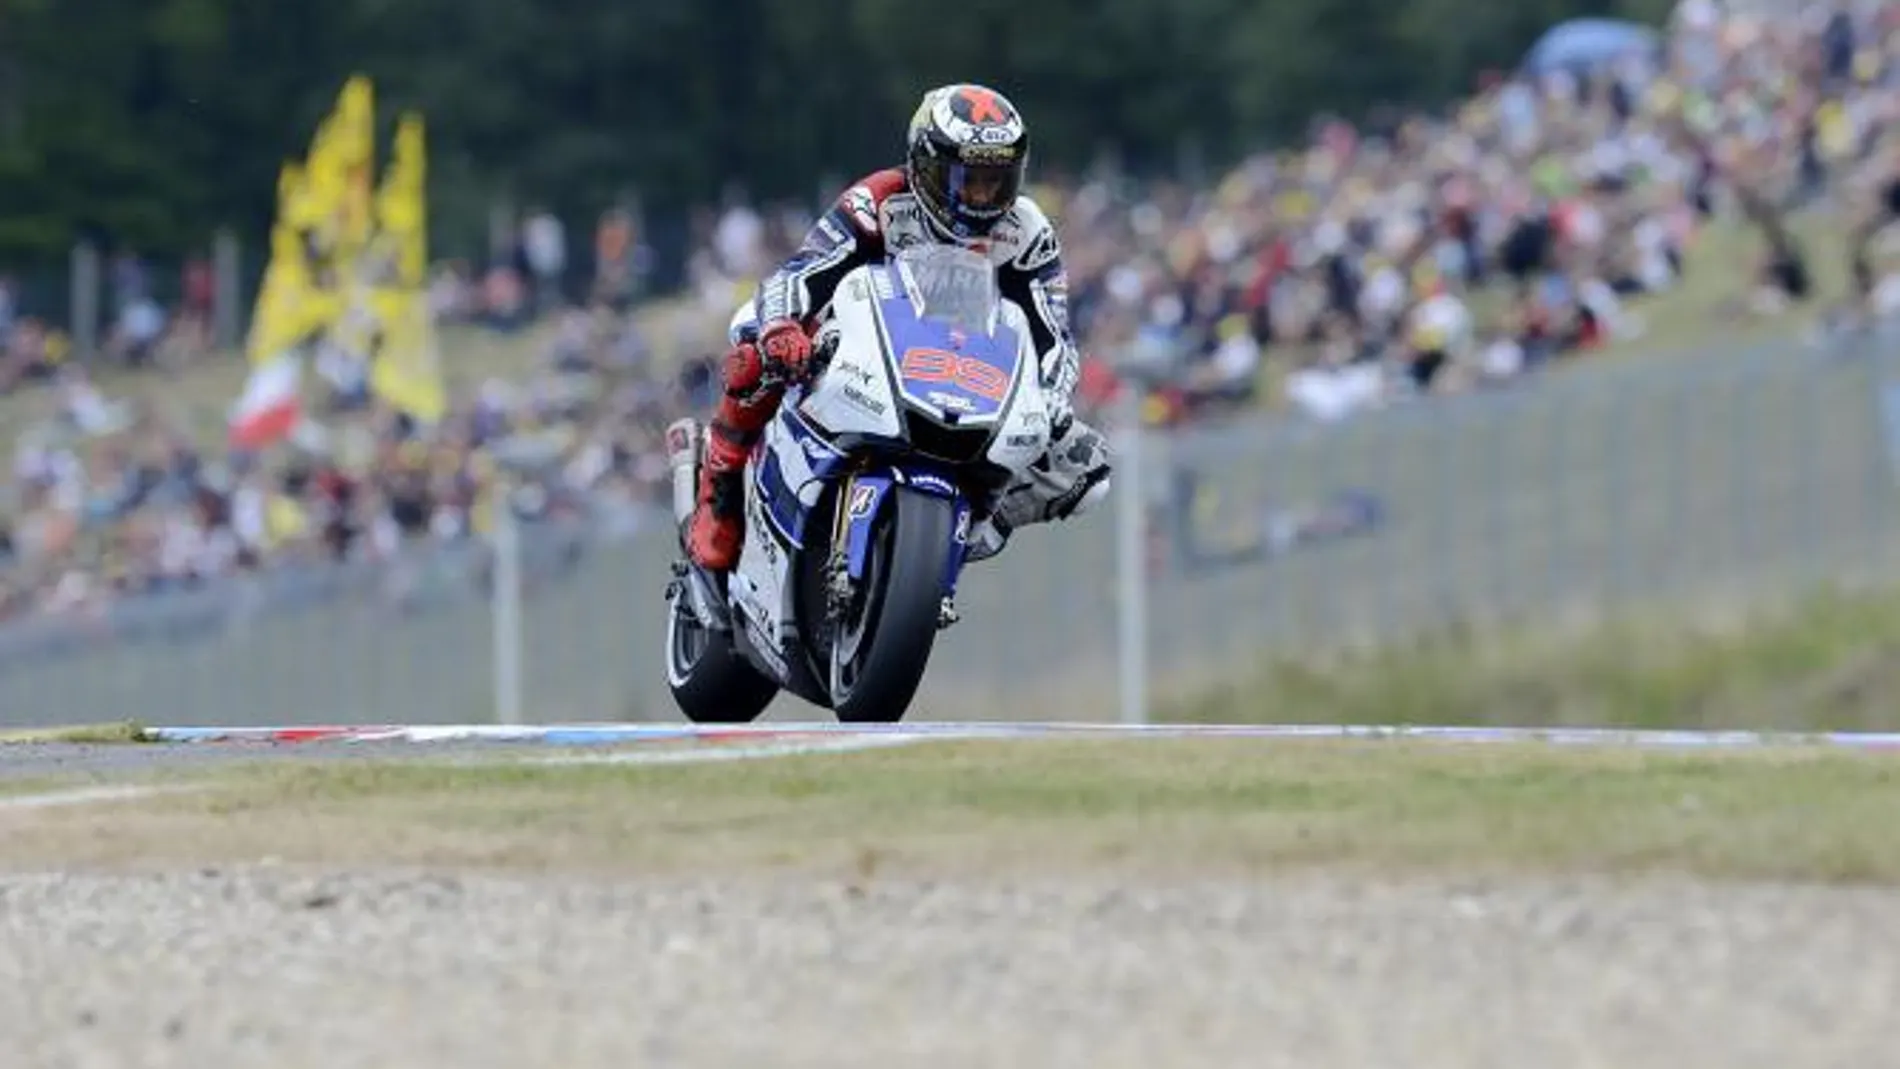 Lorenzo lidera el festival de Yamaha en MotoGP